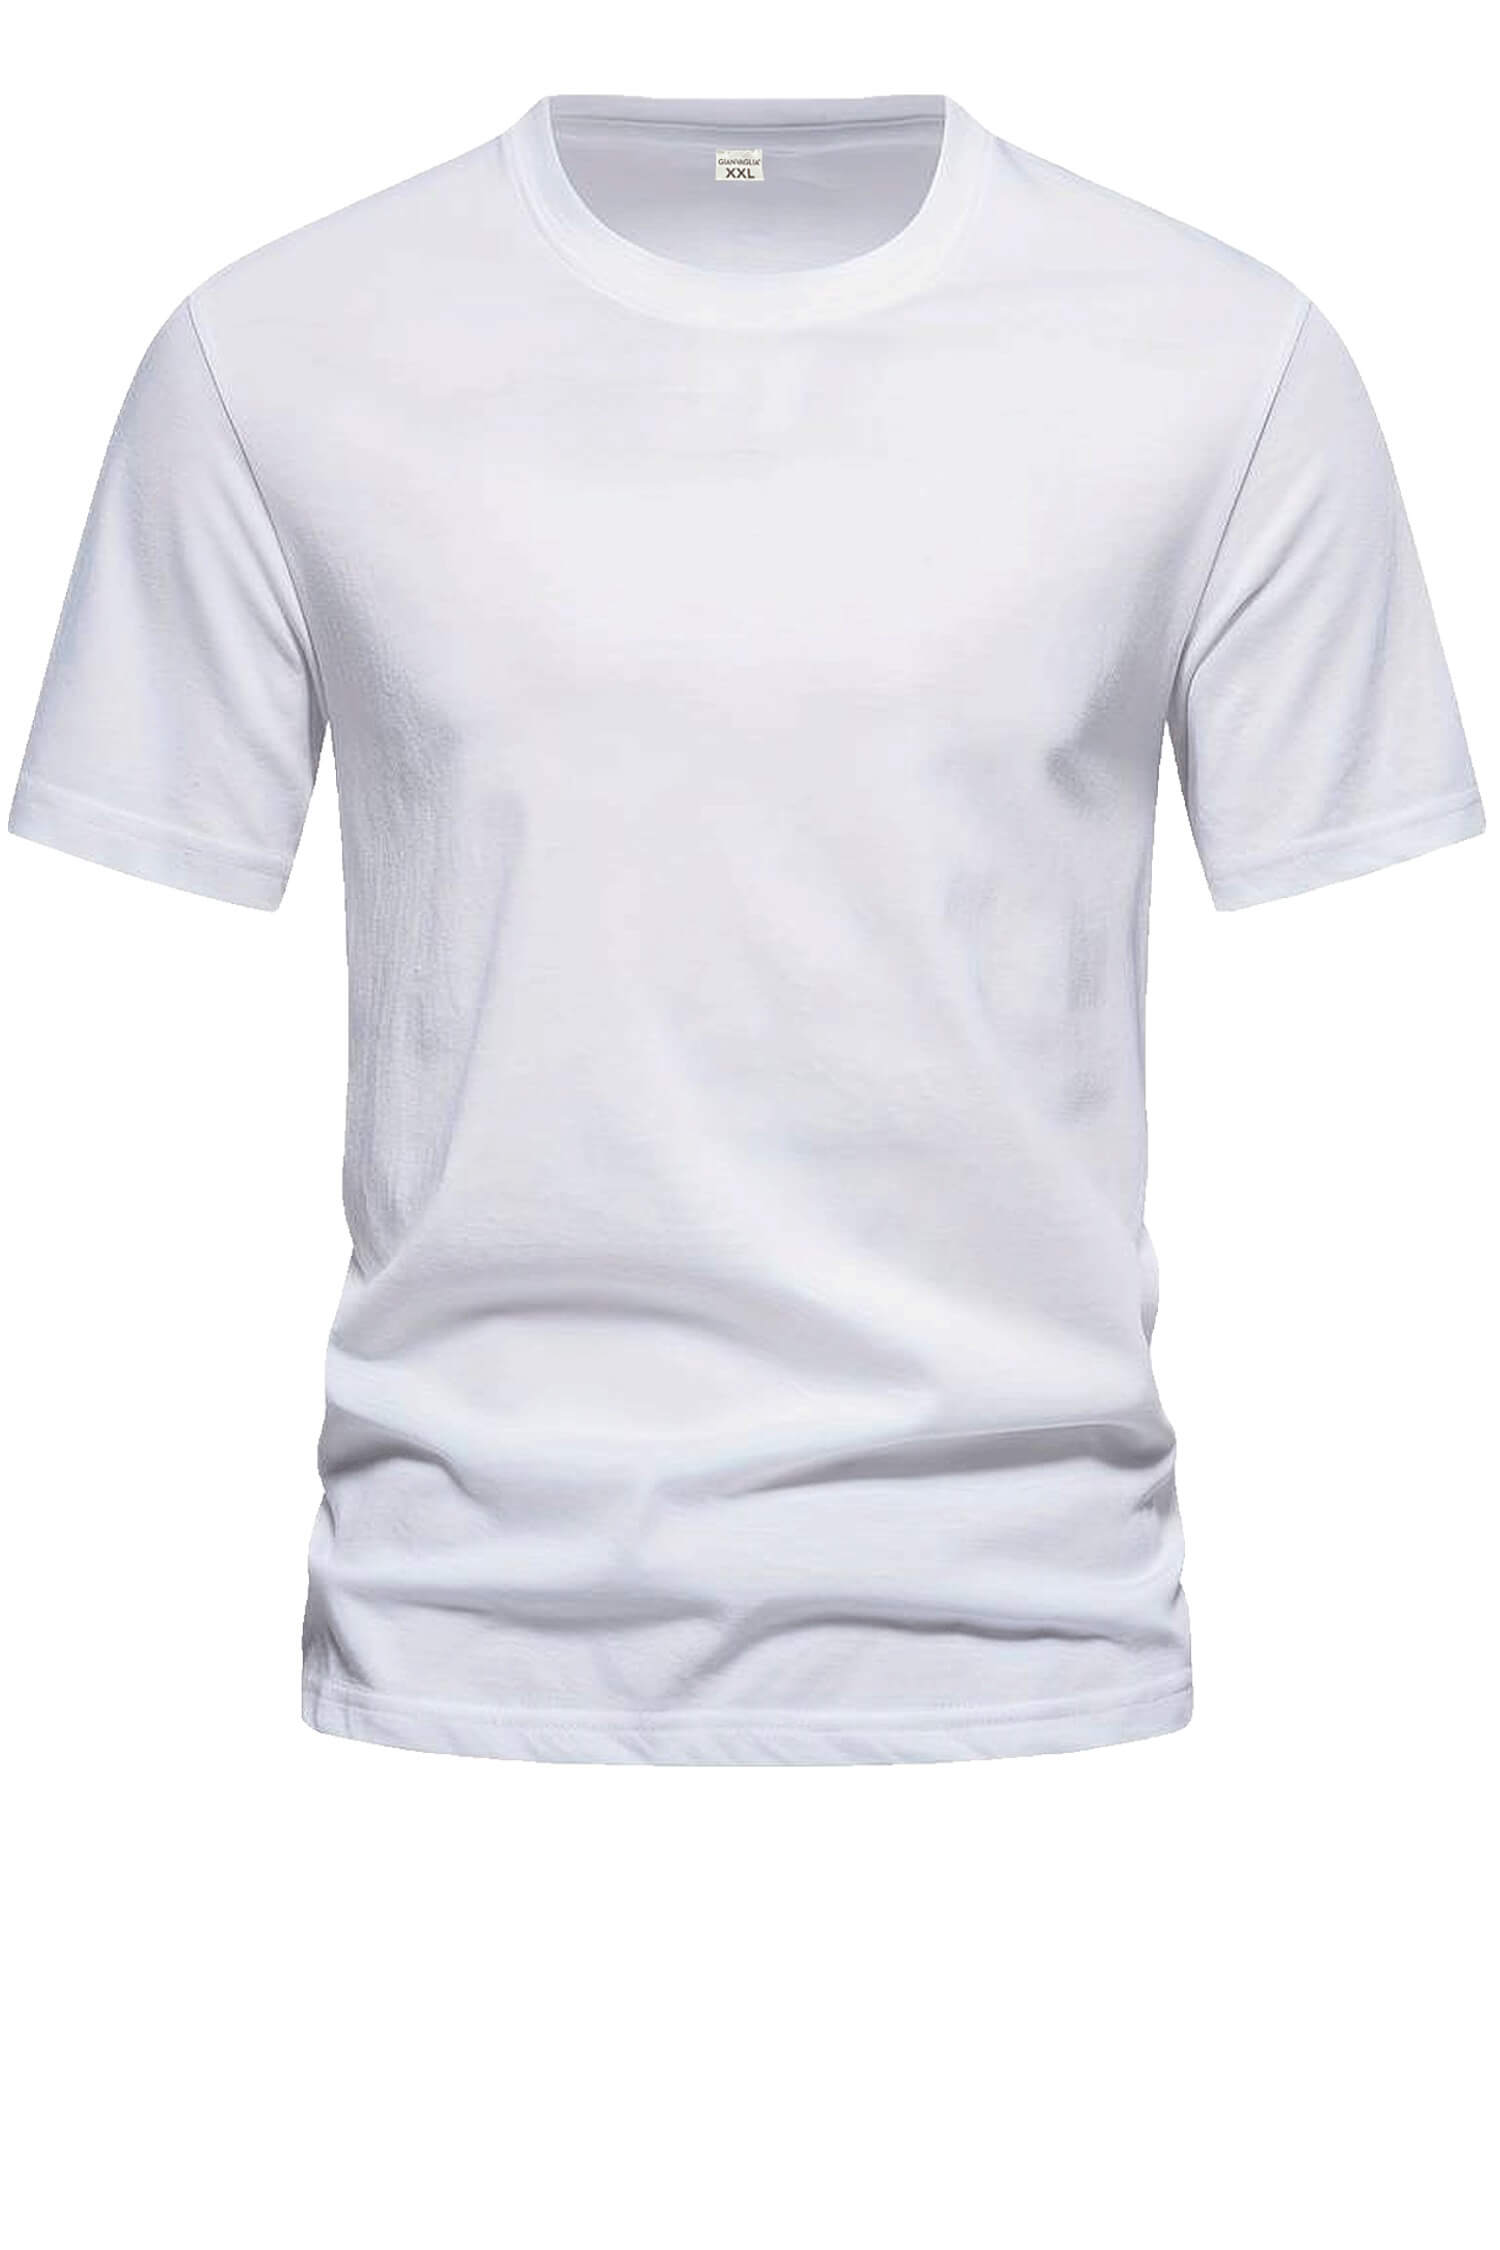 Bořek pánské klasické tričko TS-1006 XL bílá